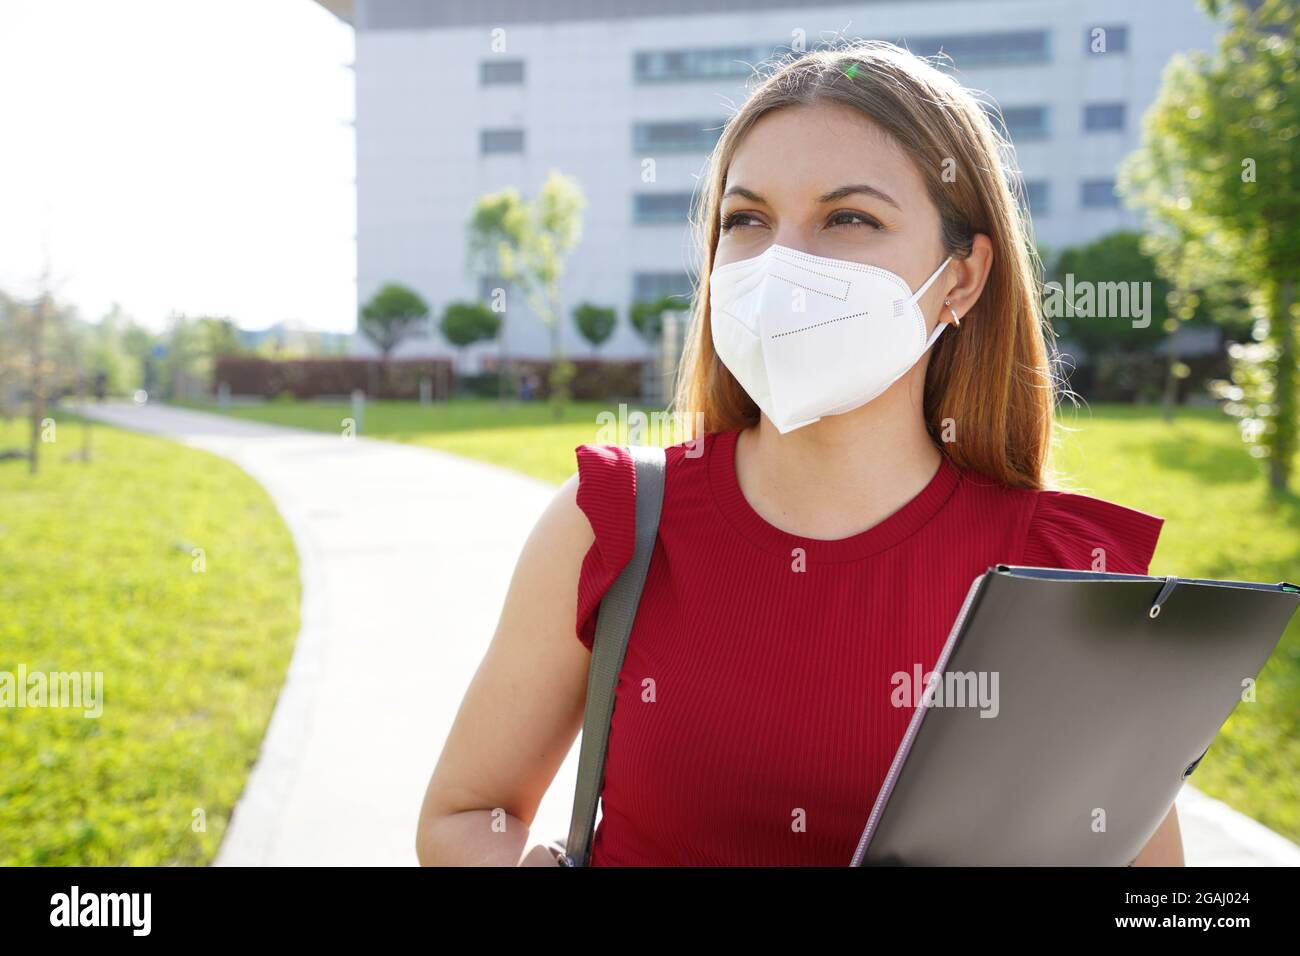 Universitätsstudentin Mädchen mit FFP2 KN95 Gesichtsmaske hält Ordner auf der Seite im Freien suchen Stockfoto